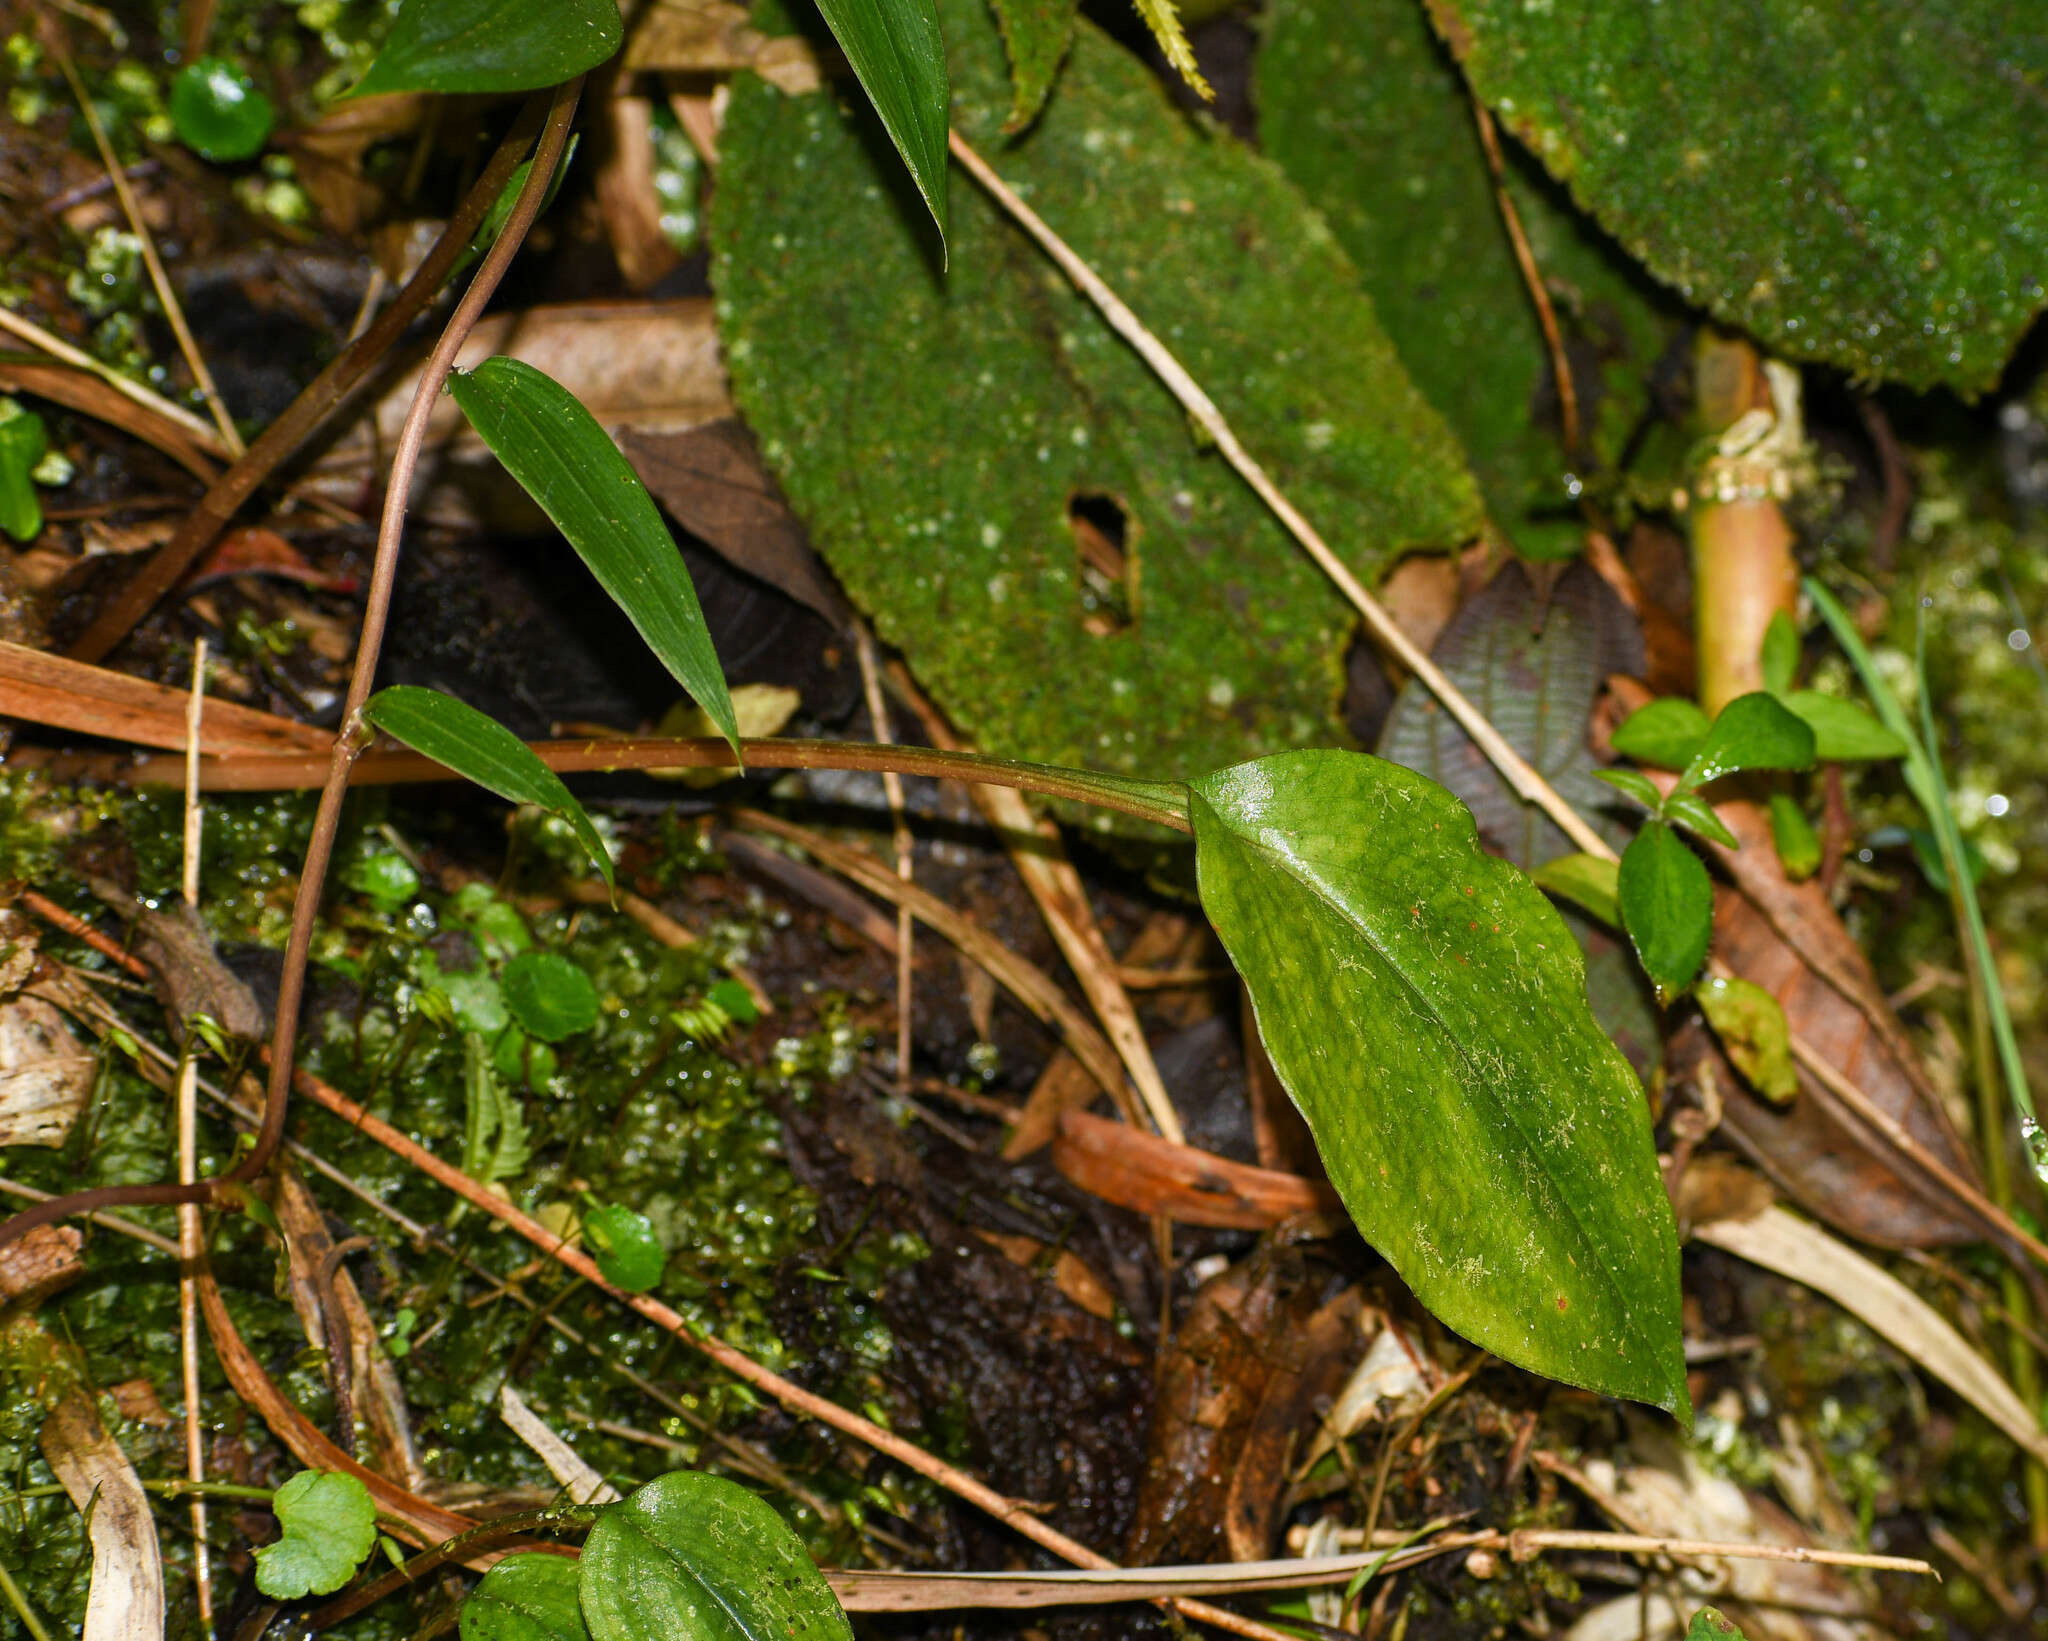 Image of Cranichis ciliata Kunth